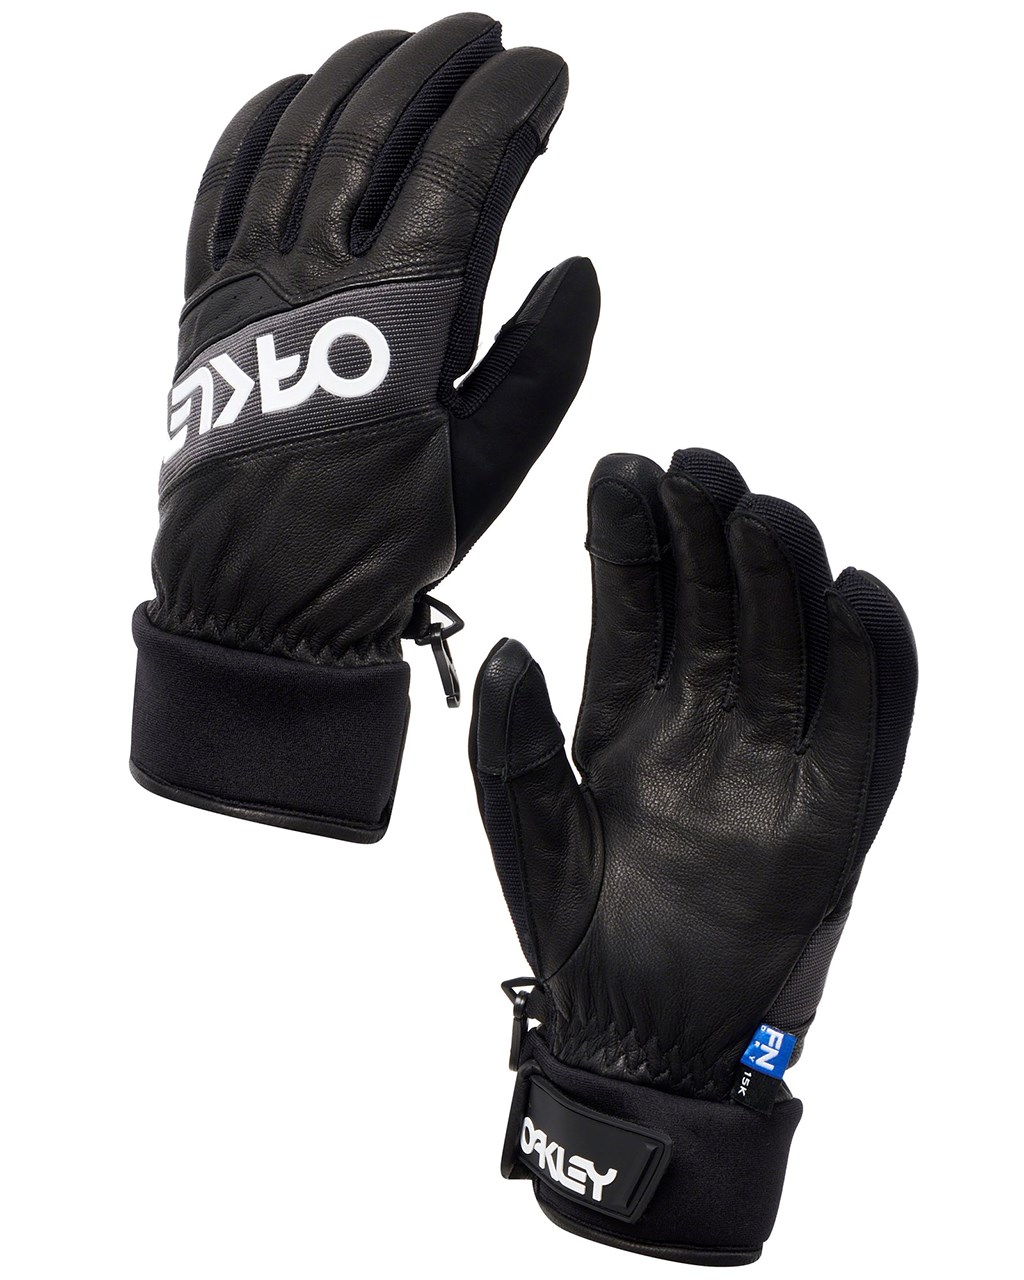 Oakley Factory Winter Glove Blackout